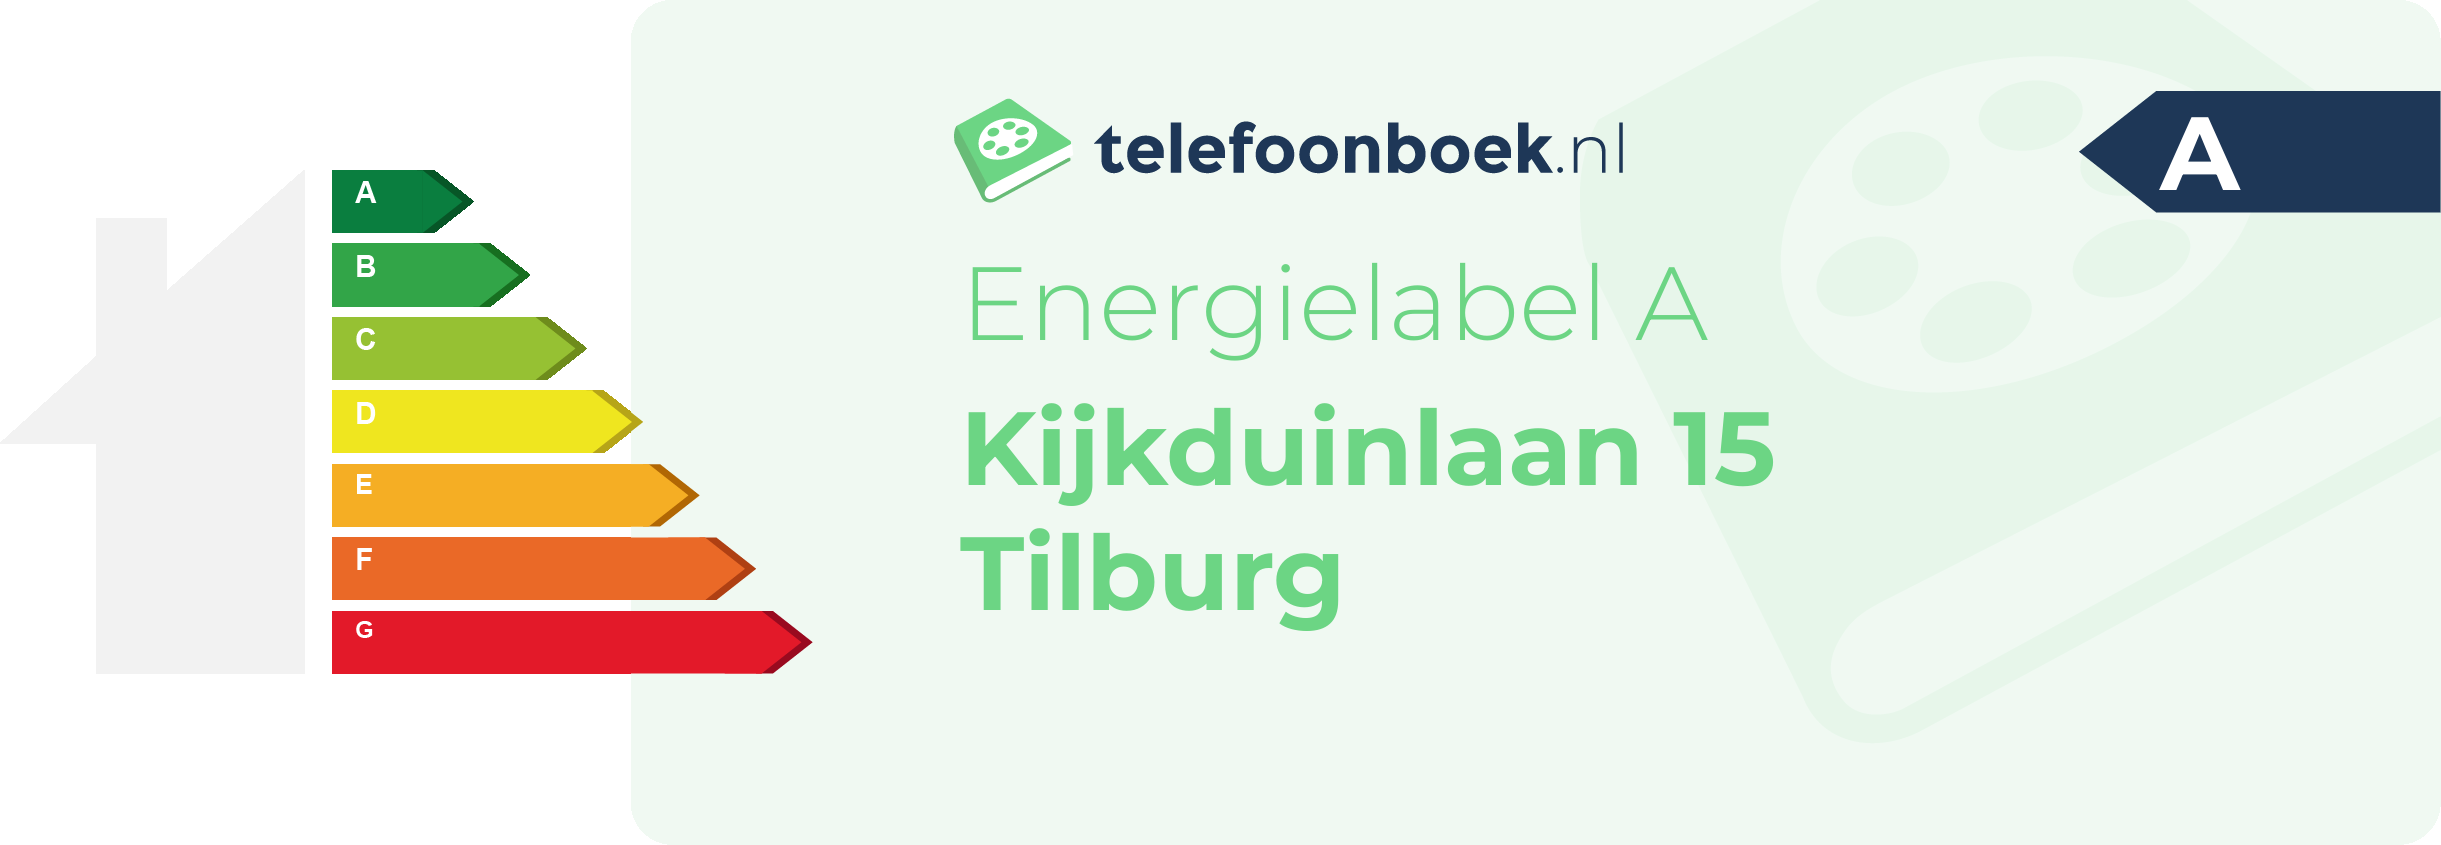 Energielabel Kijkduinlaan 15 Tilburg